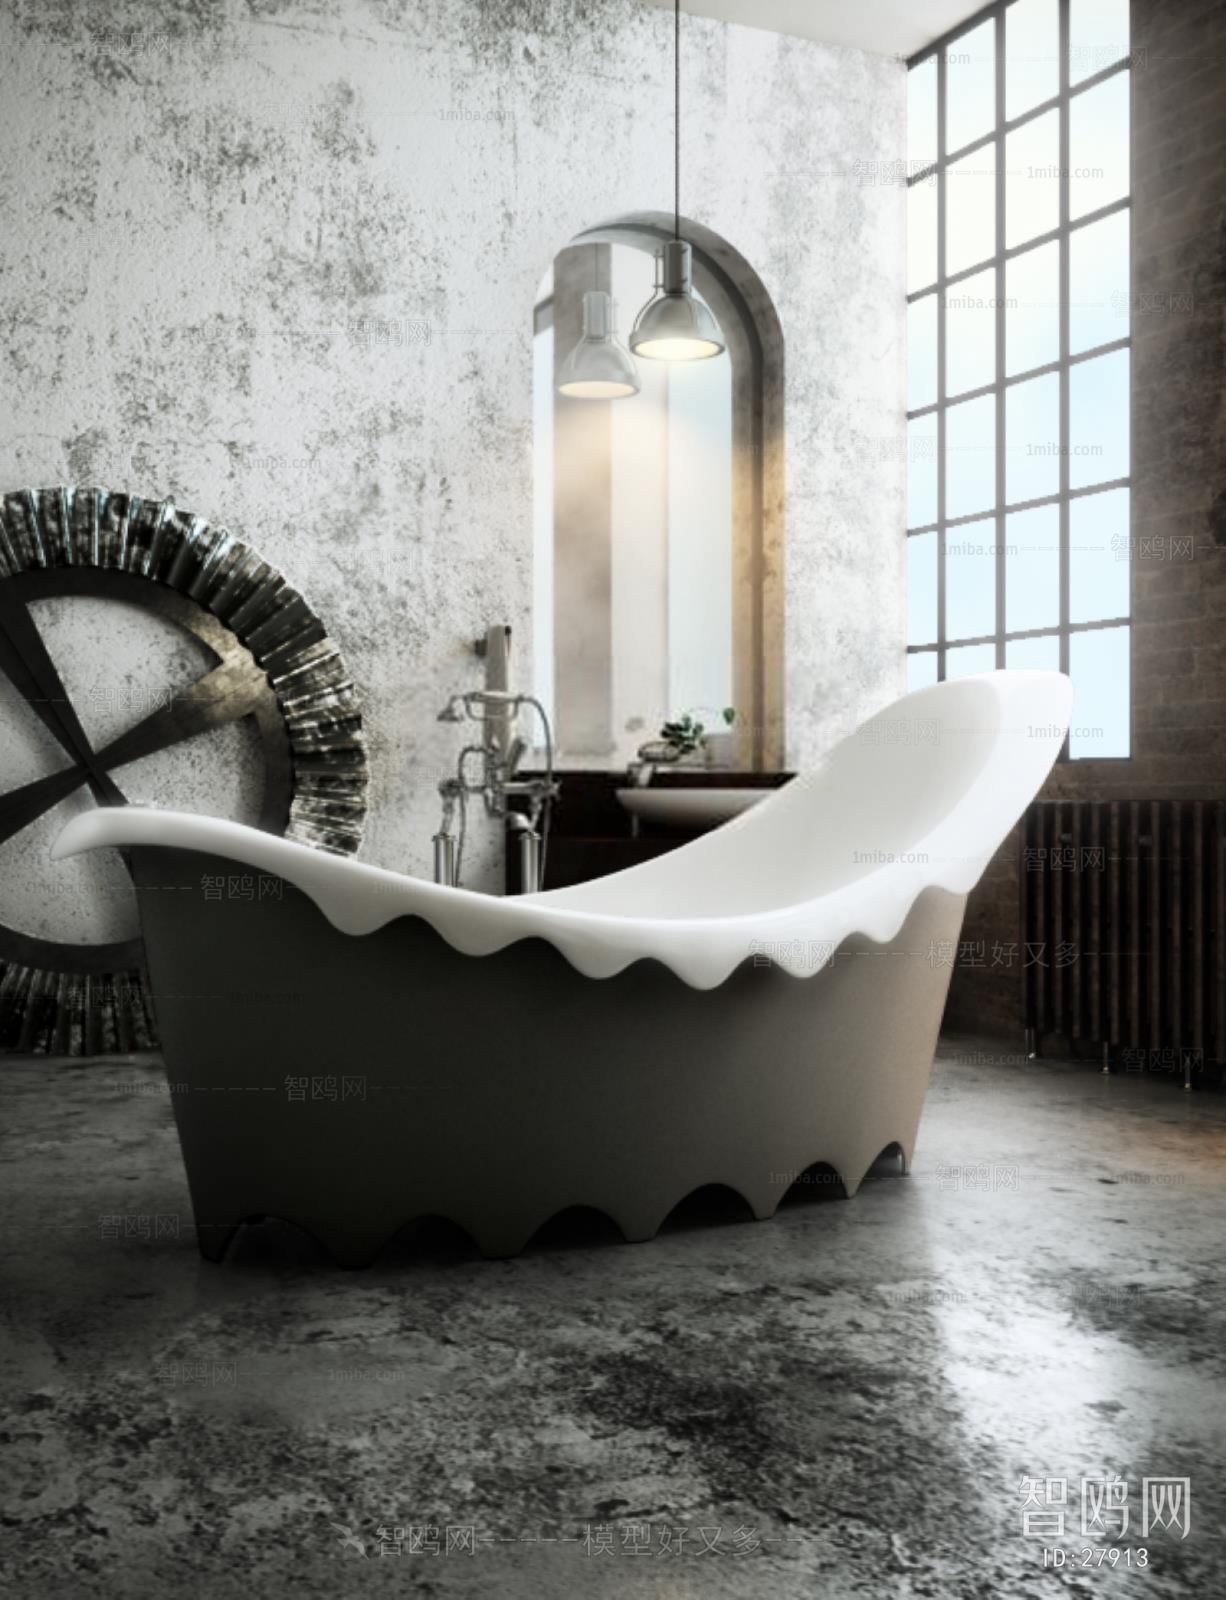 Modern Industrial Style Bathtub